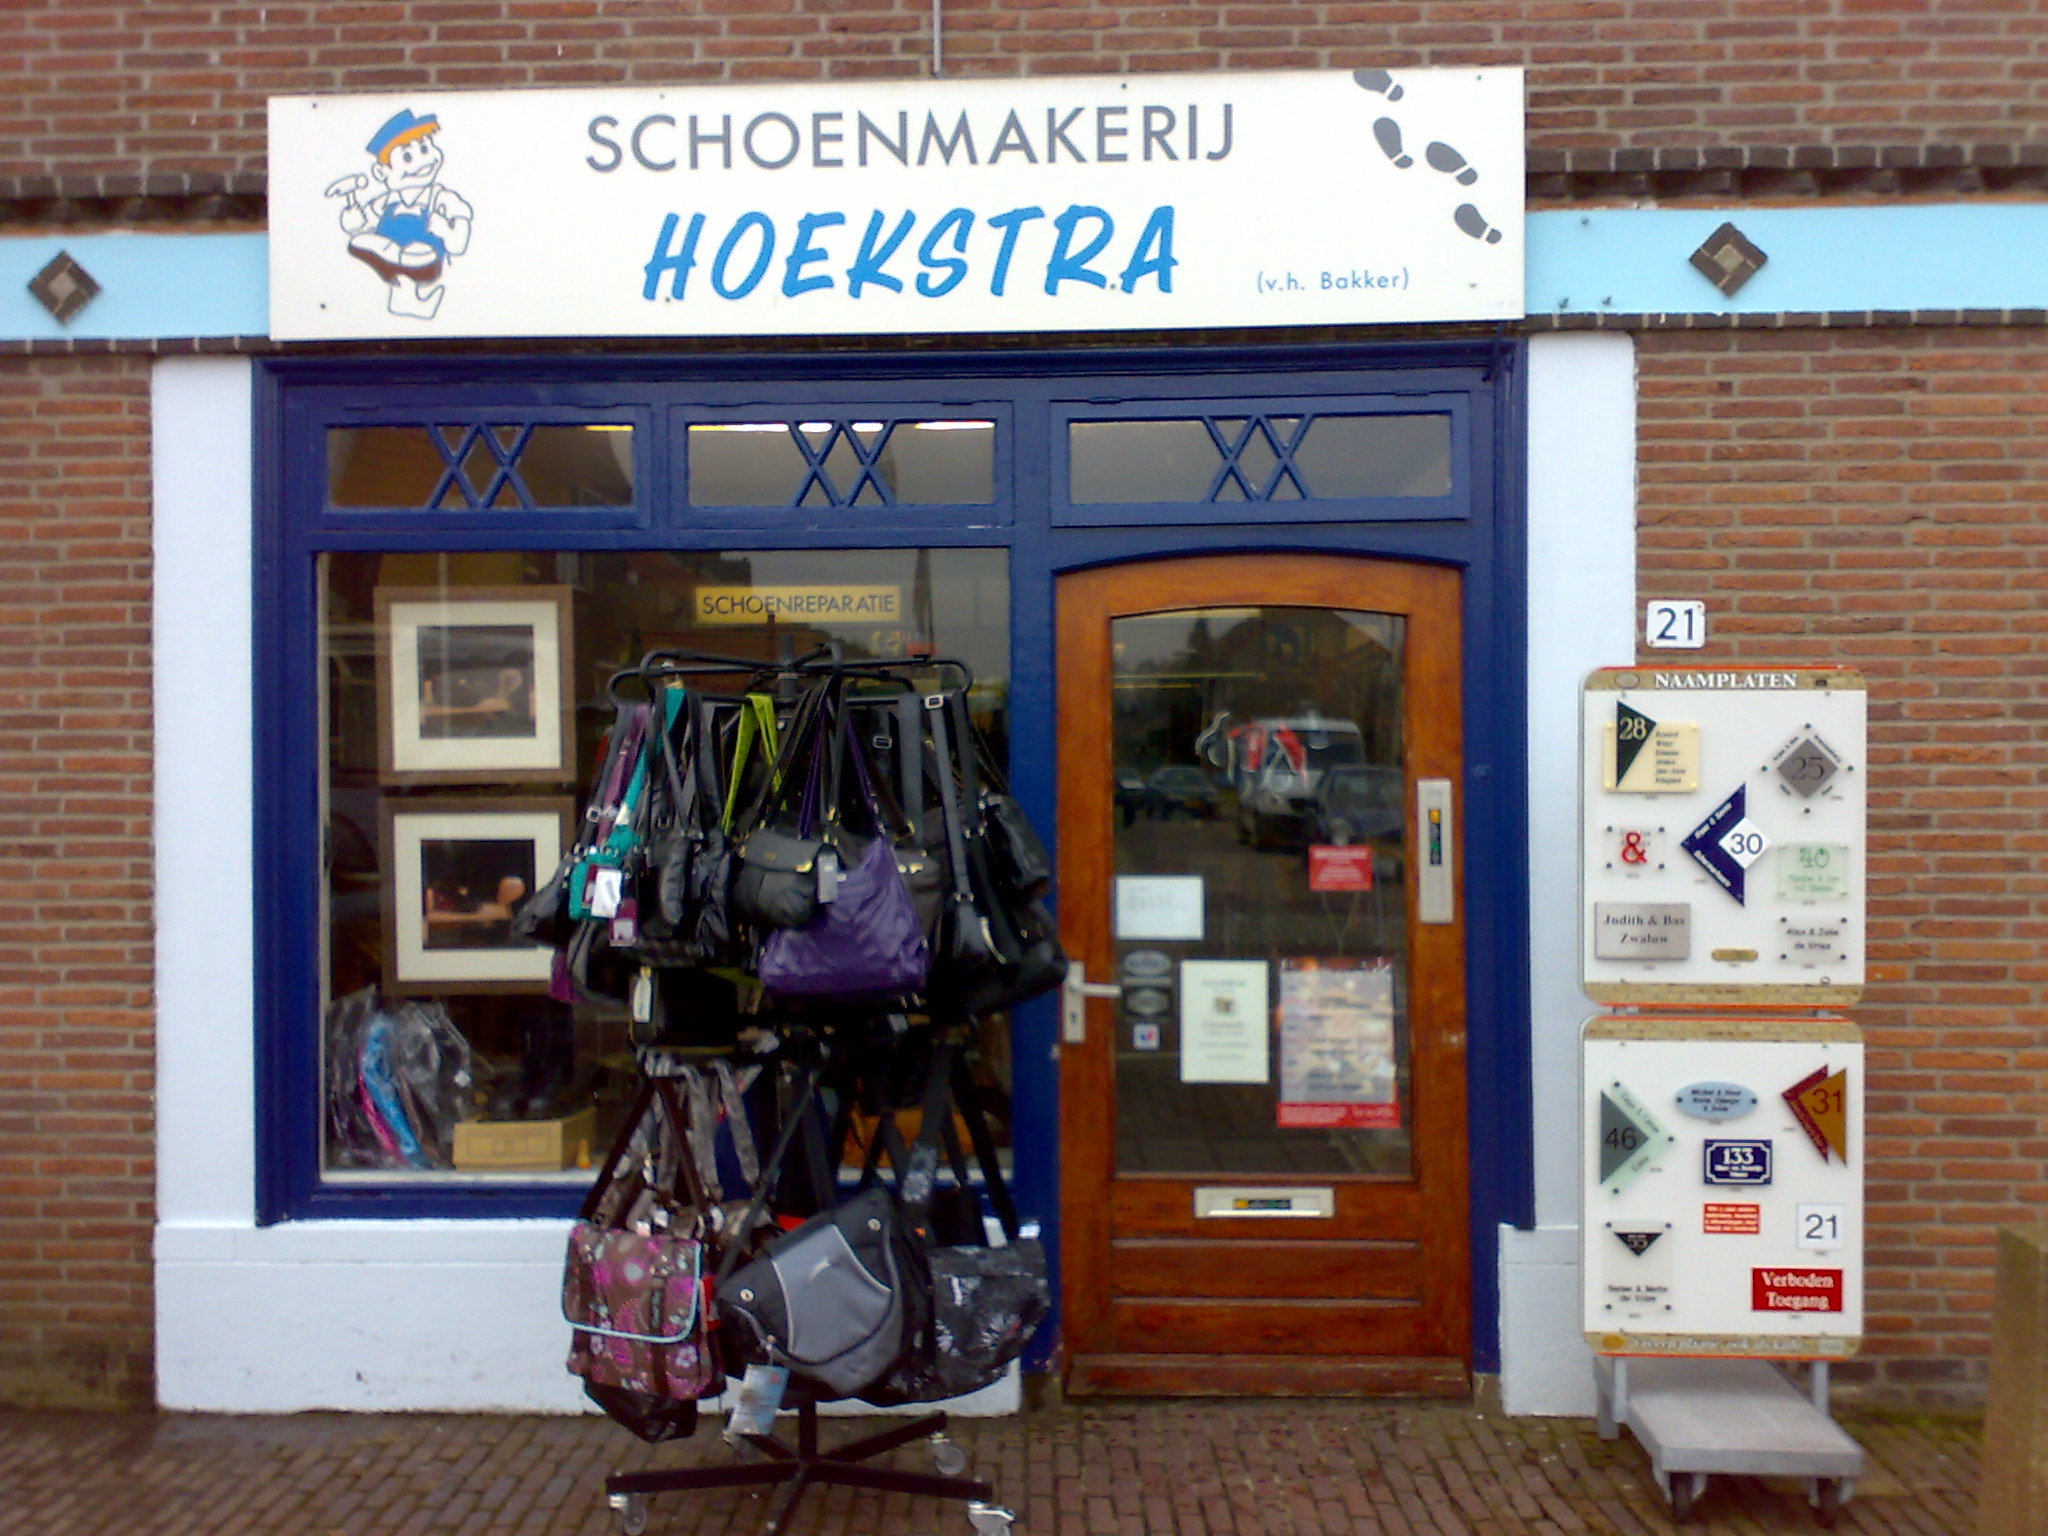 Schoenmakerij Hoekstra